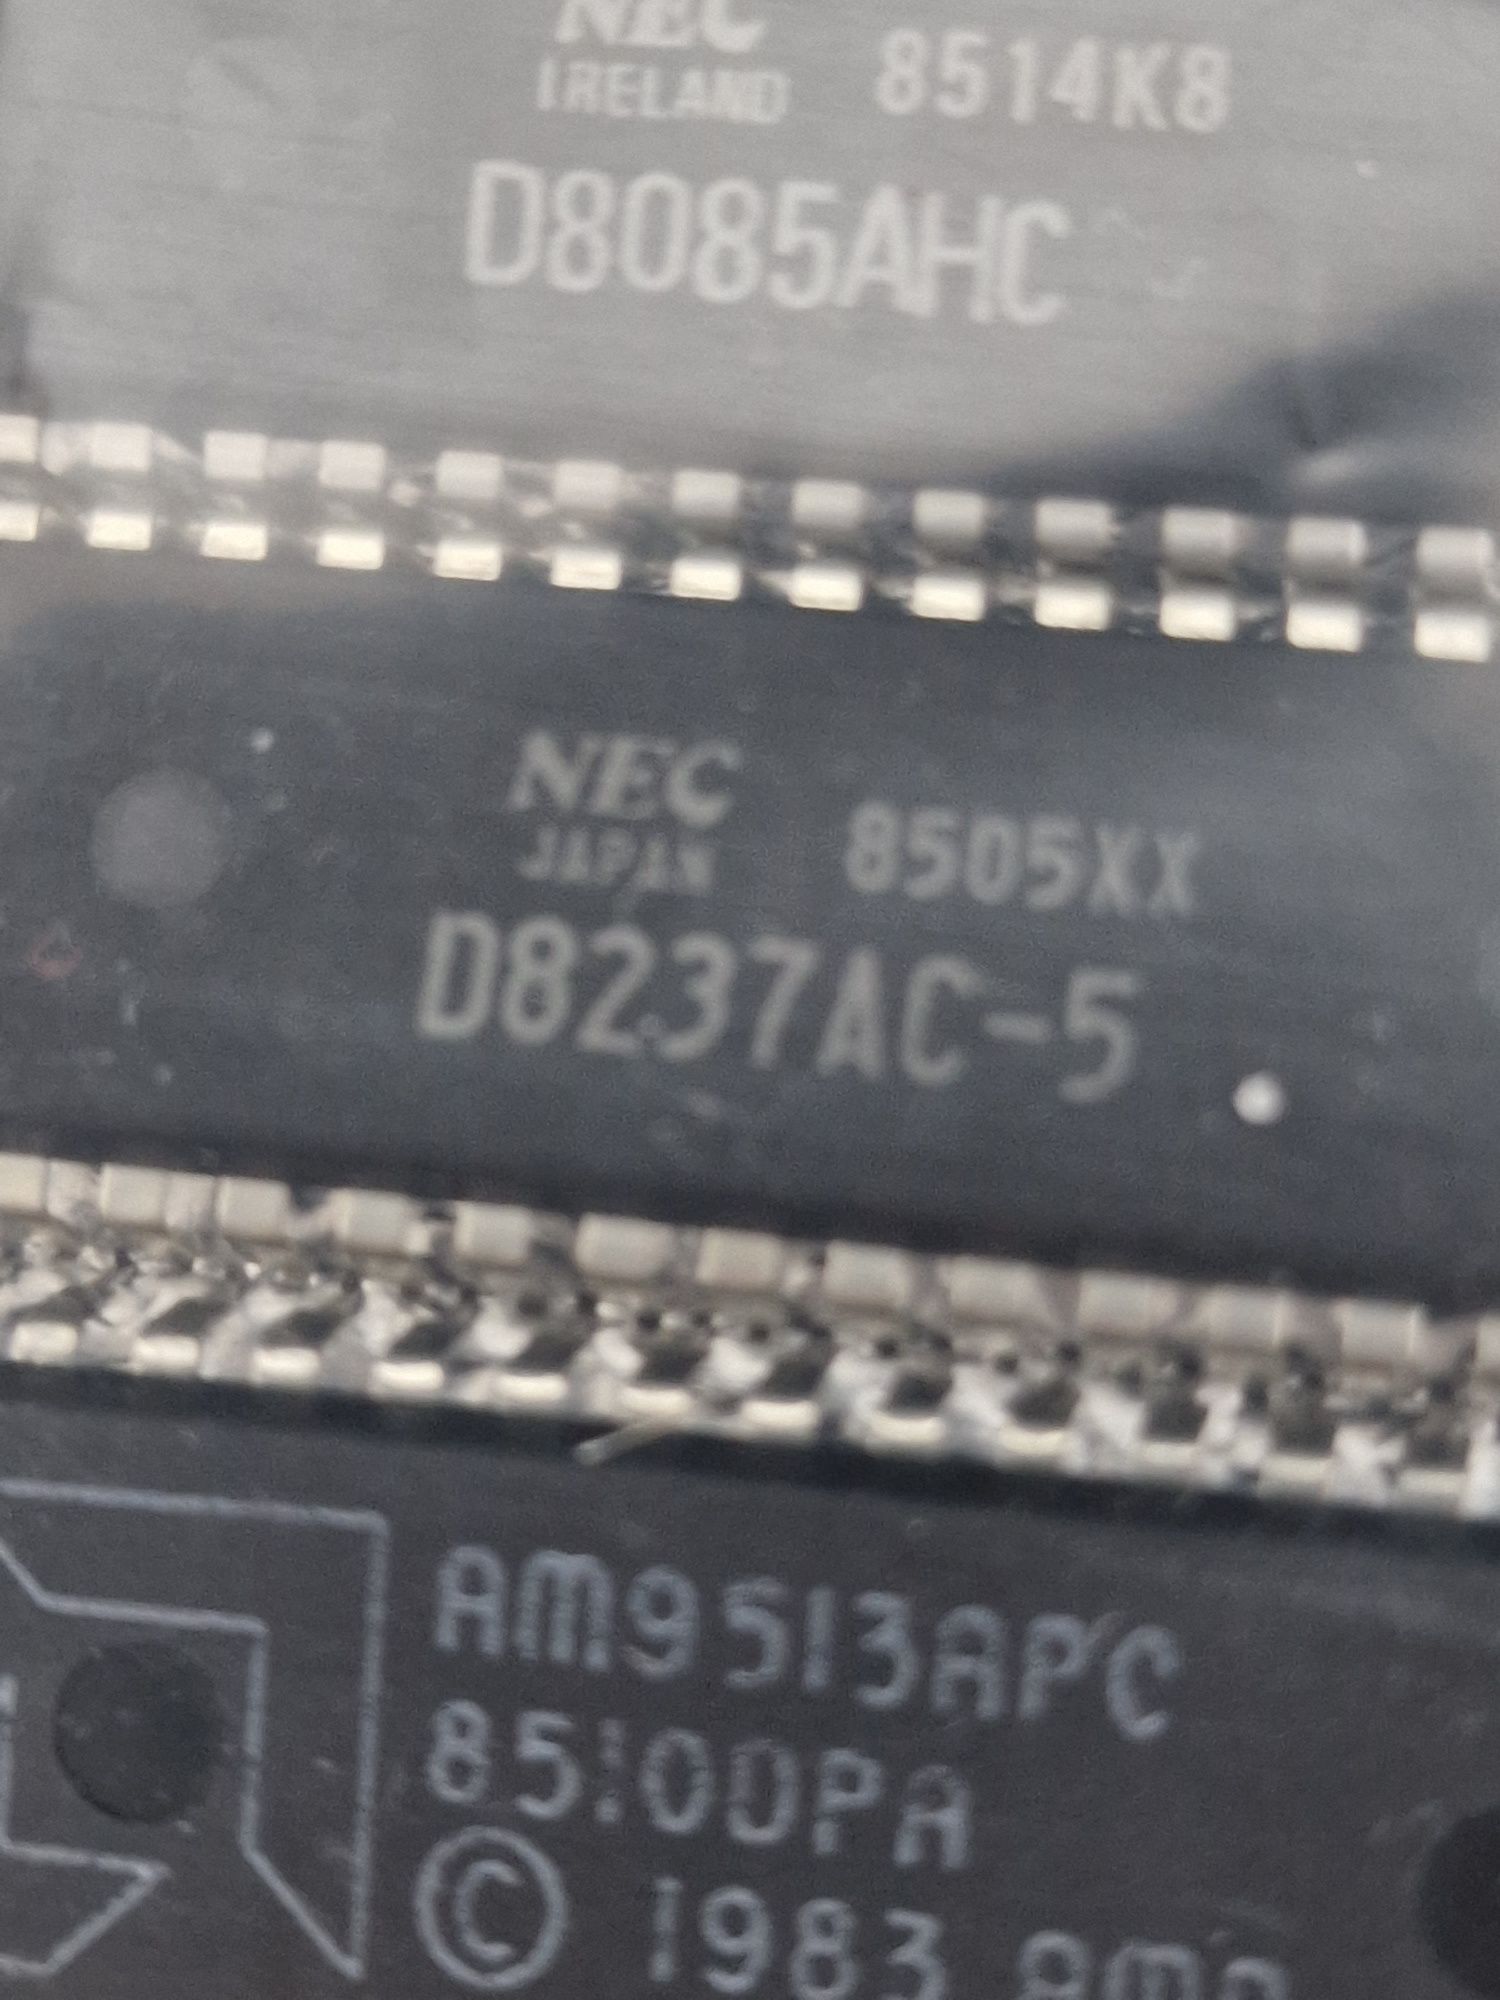 Programowalny kontroler DMA NEC D8237AC-5